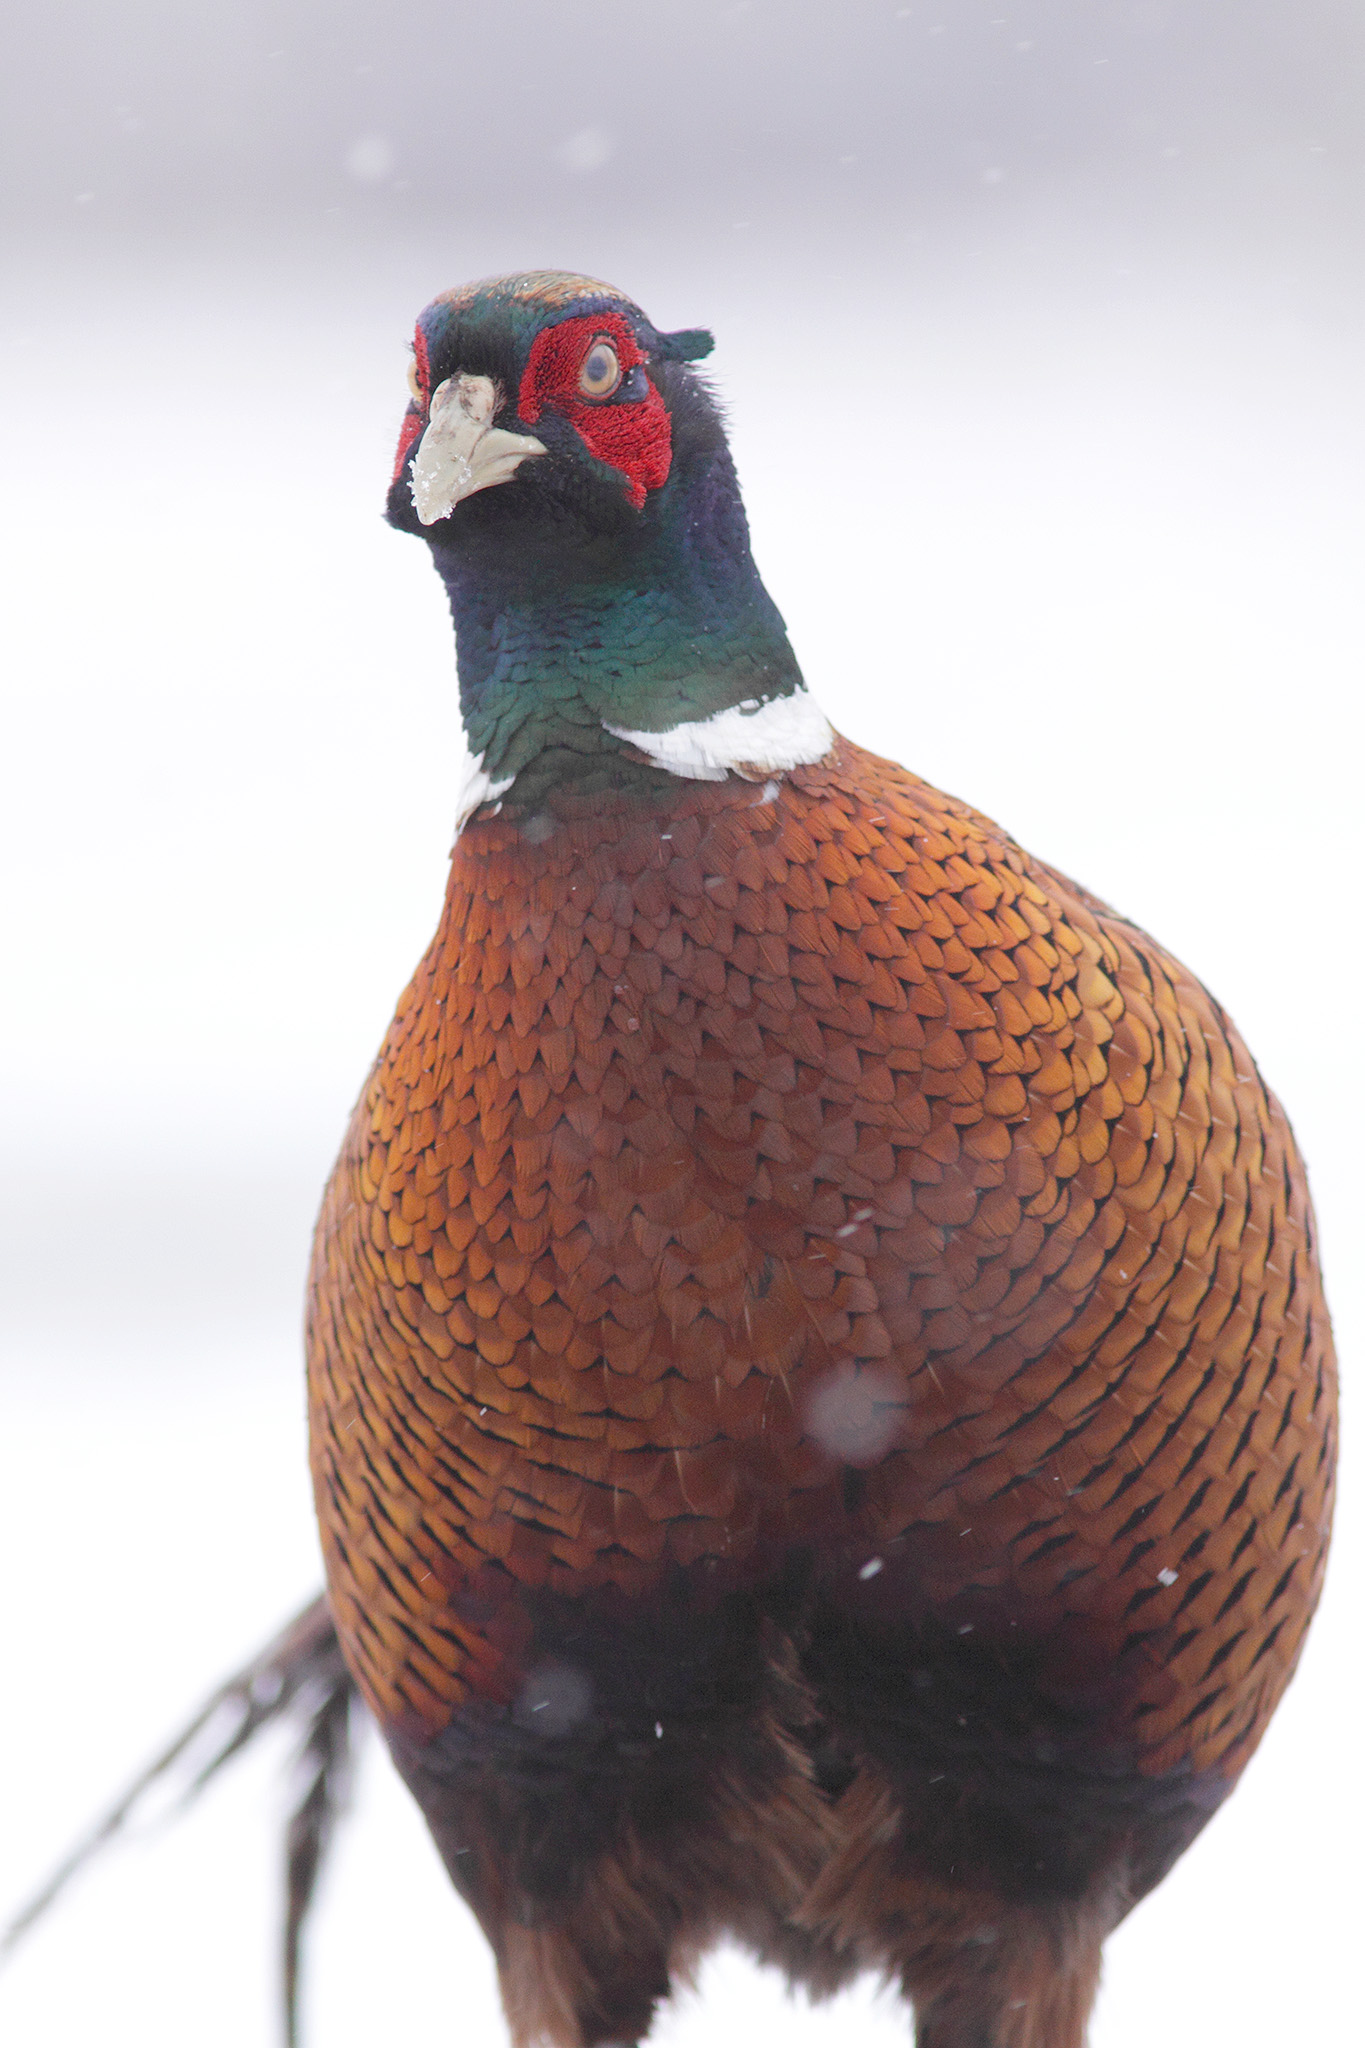 male pheasant